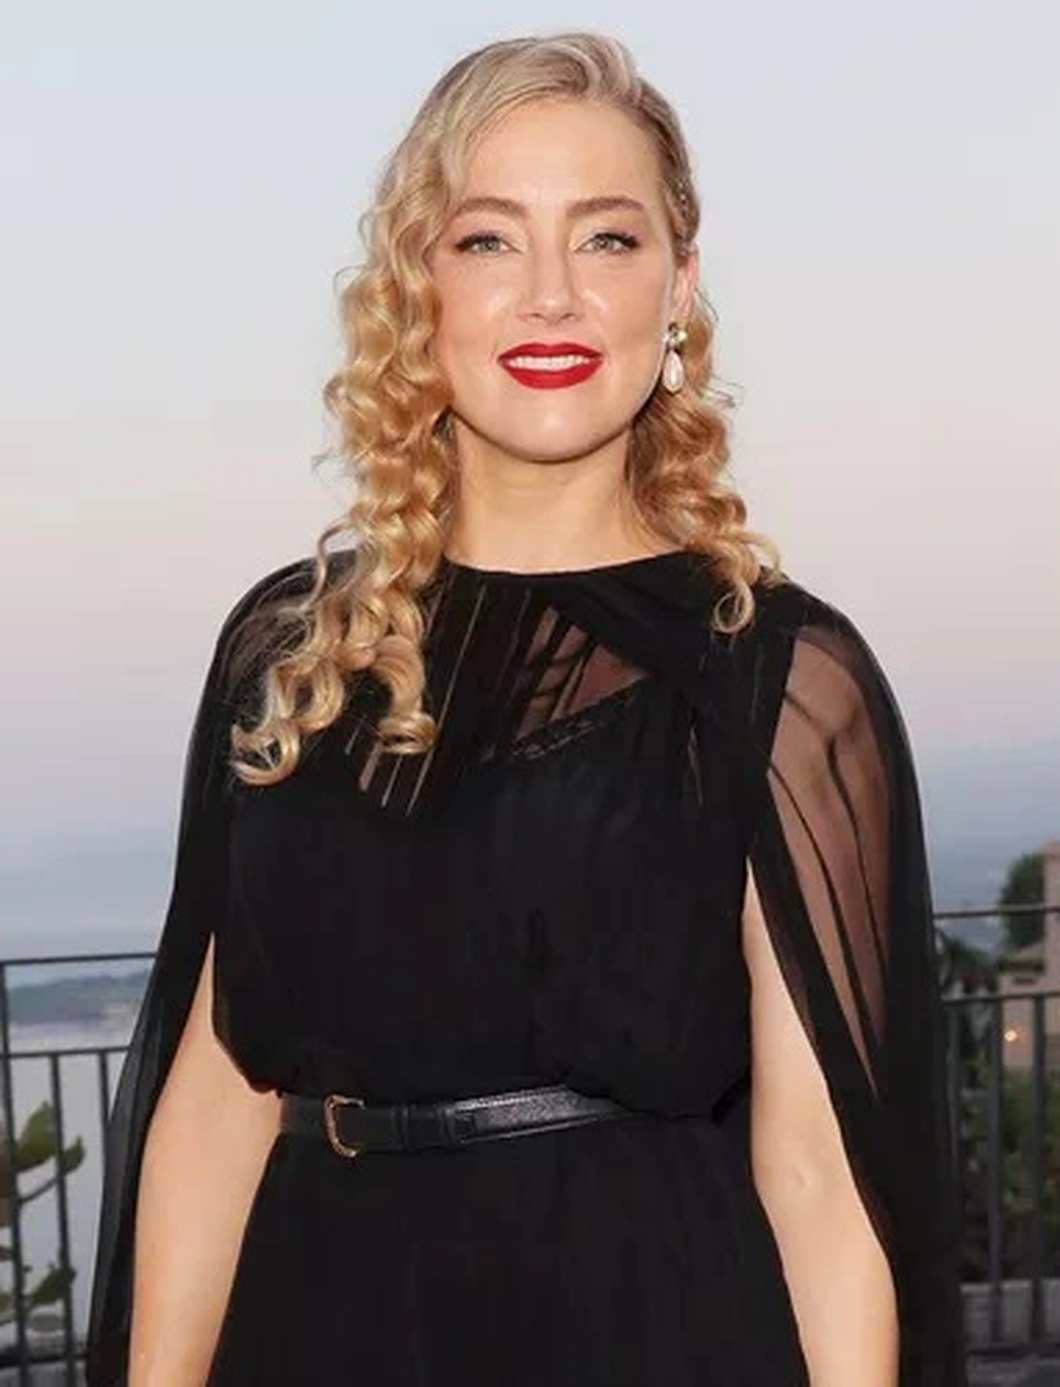 Amber Heard xuất hiện trong buổi công chiếu bộ phim mới In the Fire tại Liên hoan phim Taormina ở Ý - Ảnh: BACKGRID